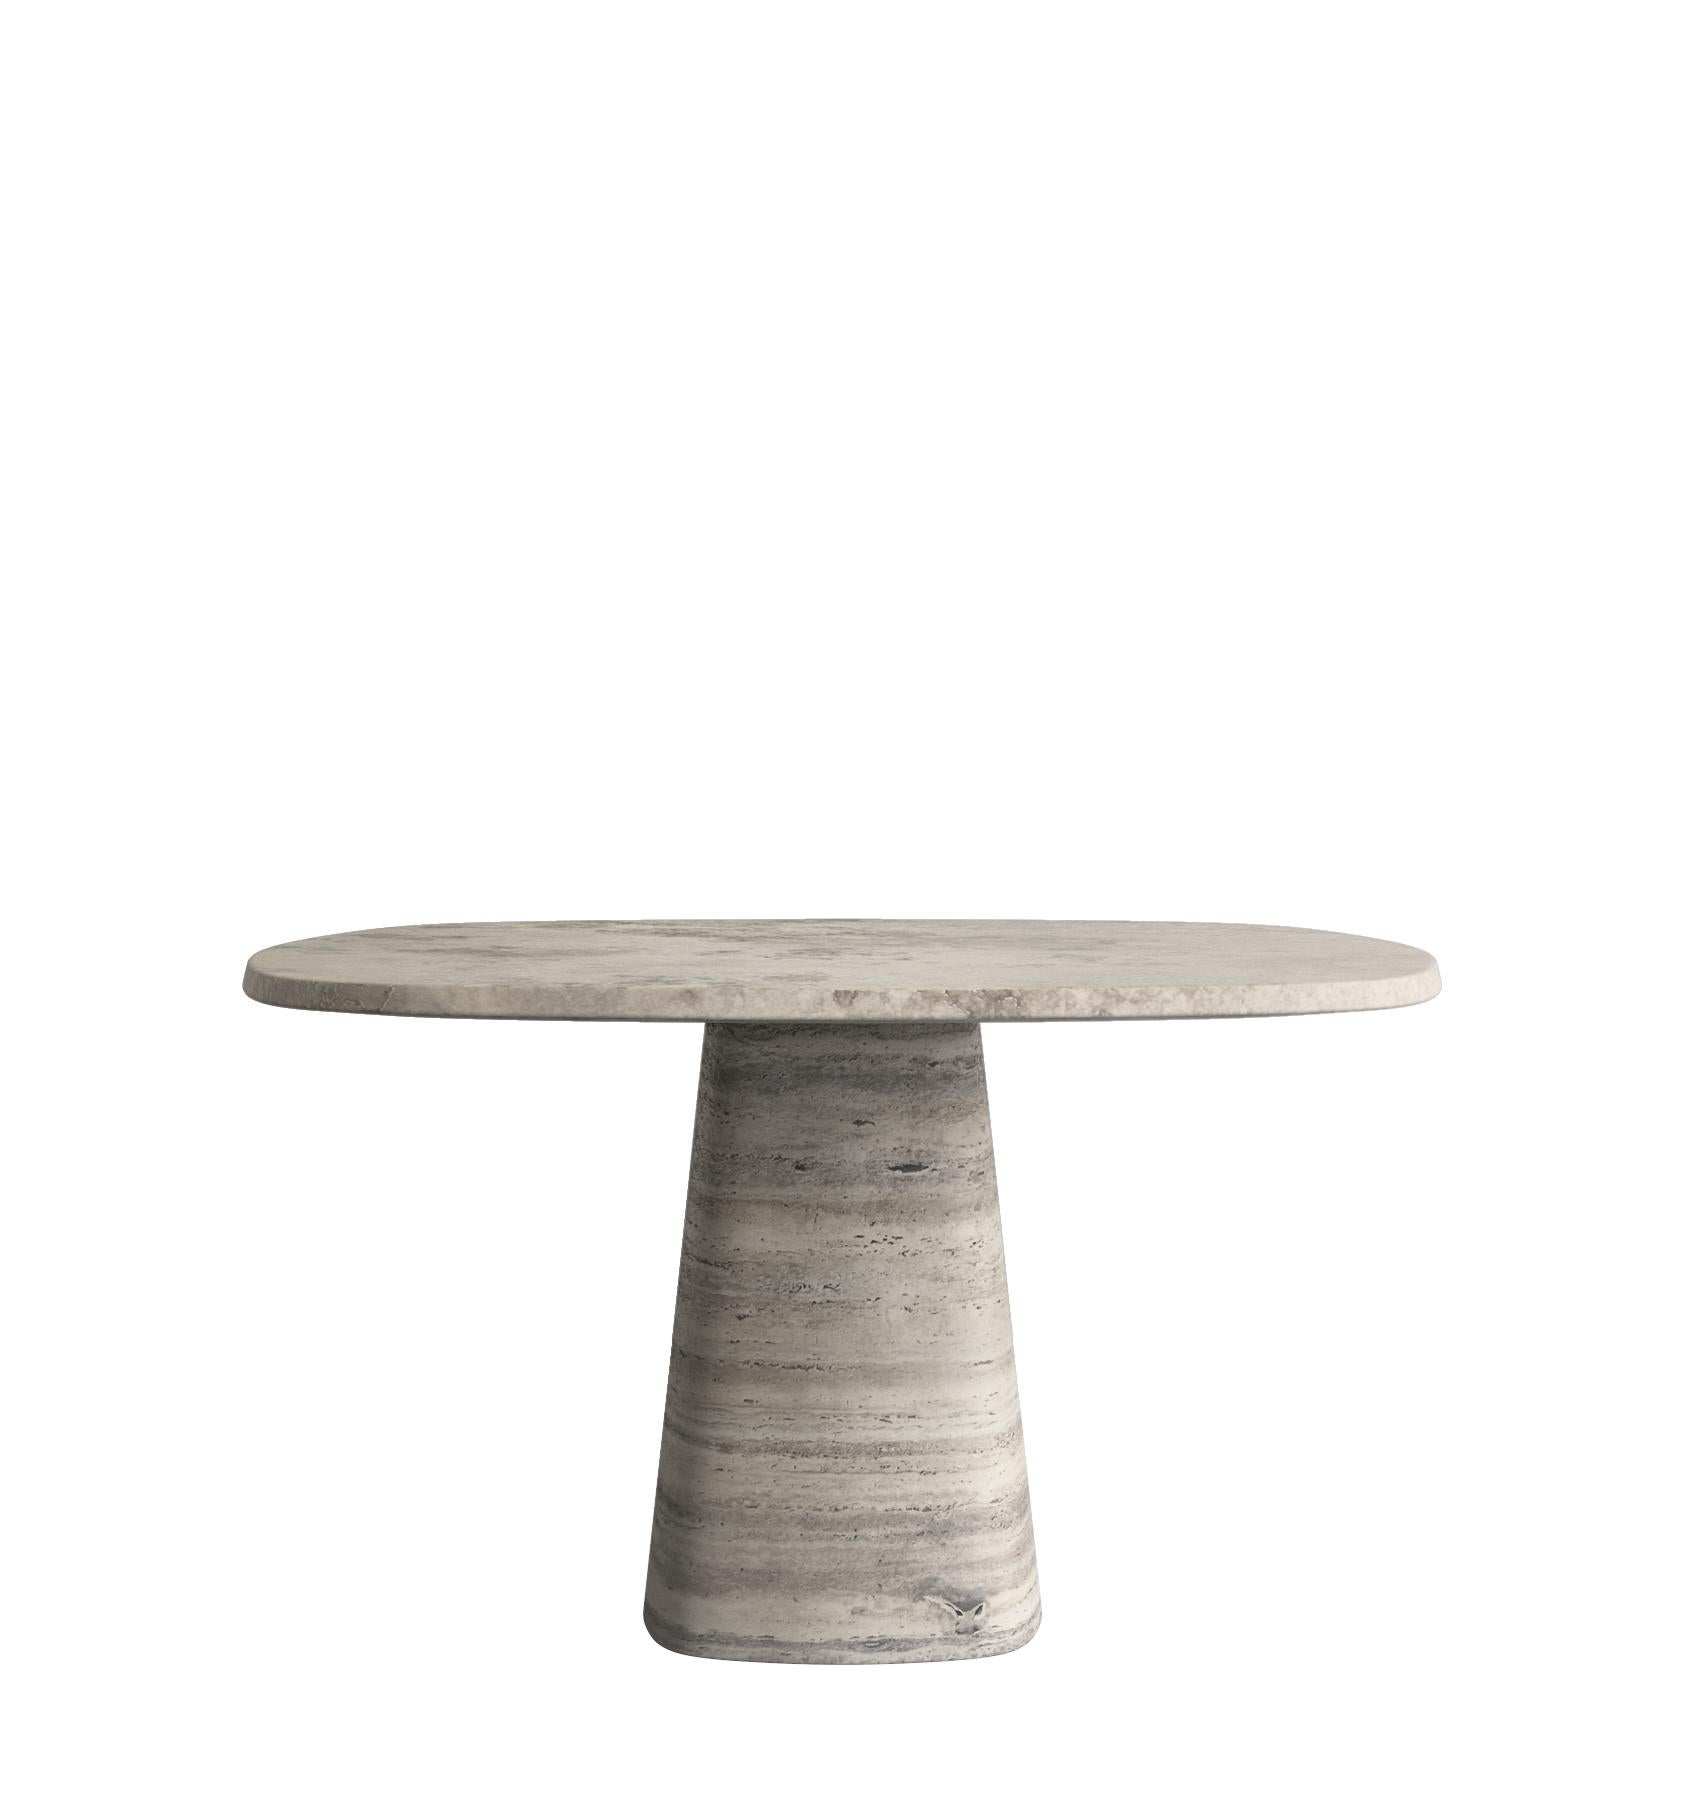 Contemporary Calacatta Macchia Vecchia Wedge Table by Marmi Serafini For Sale